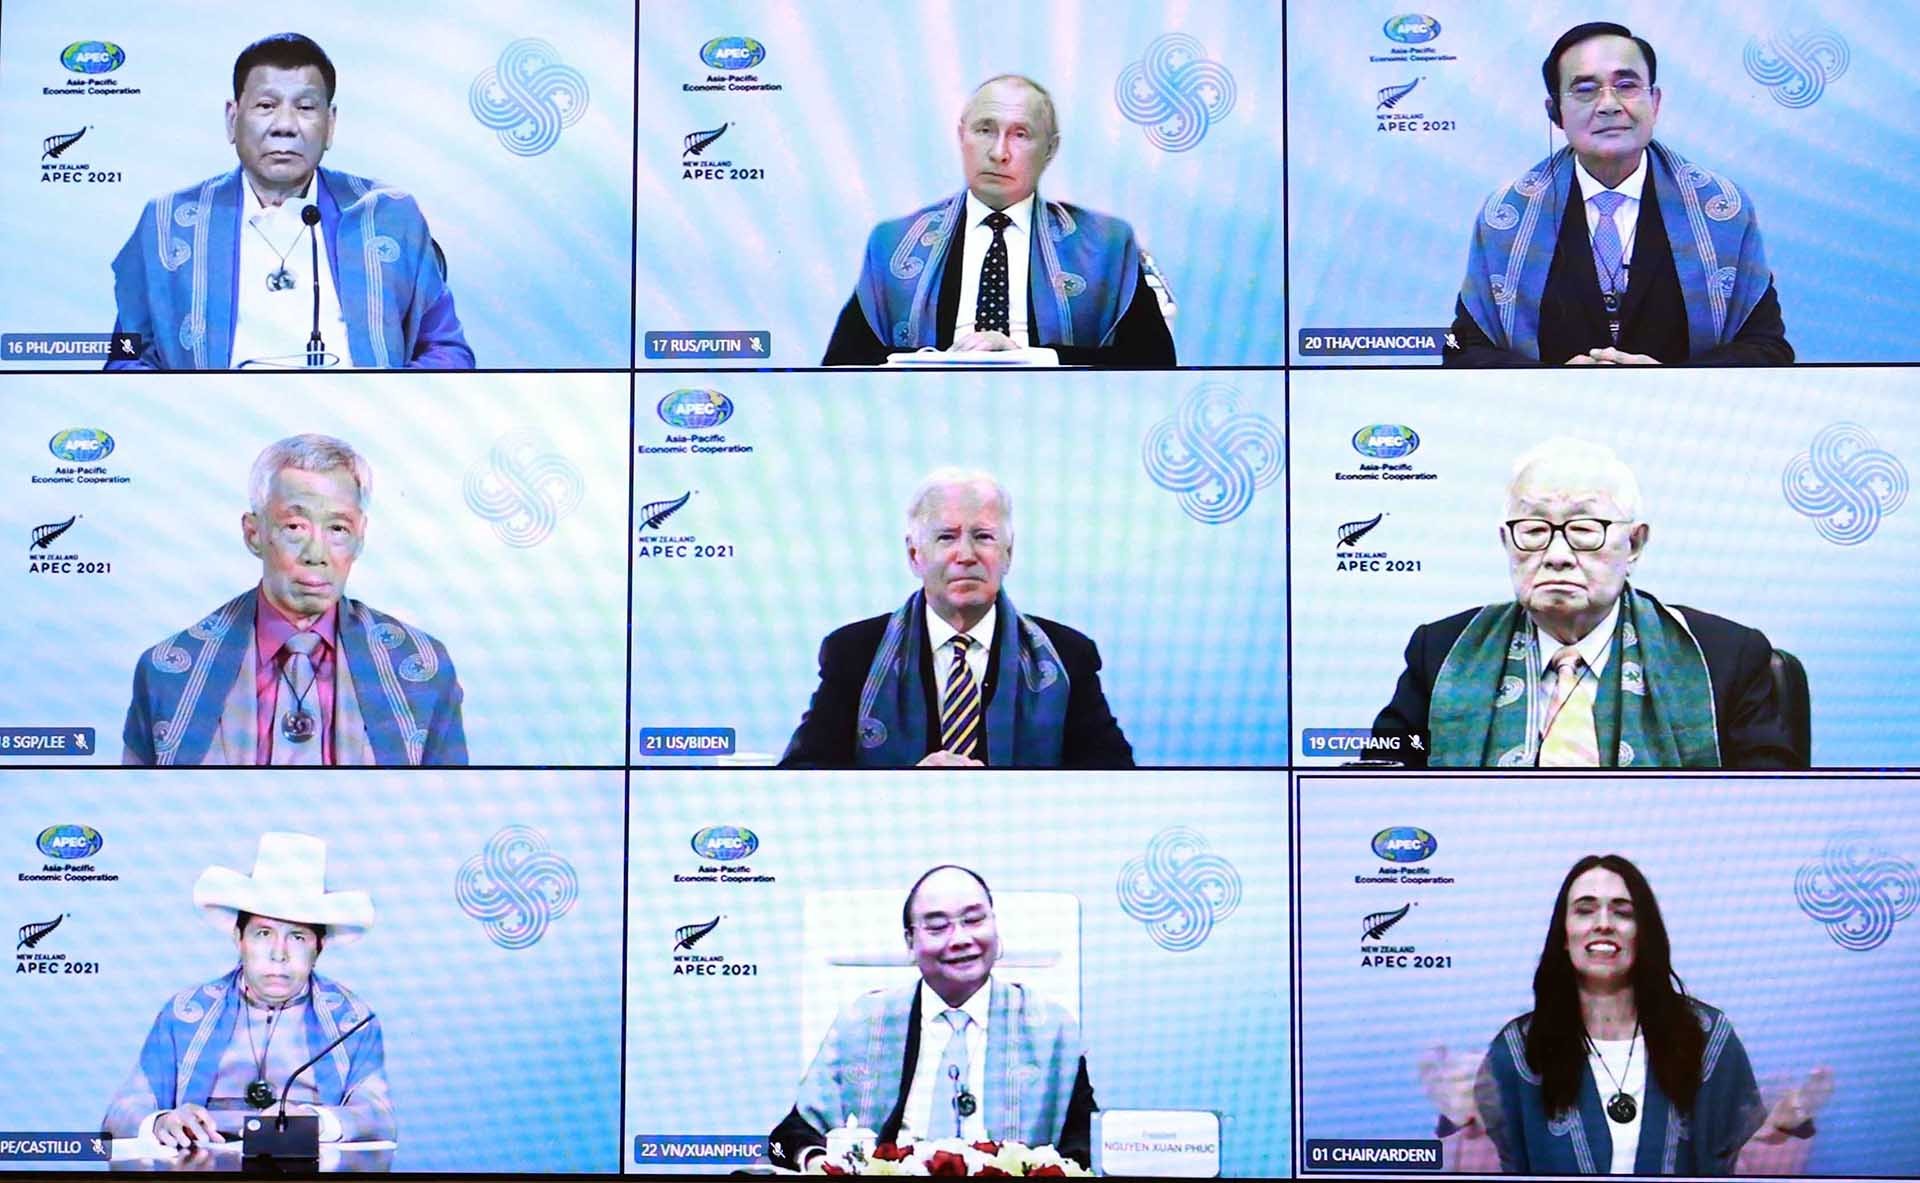 Những nội dung chính trong tuyên bố của các nhà lãnh đạo APEC 2021